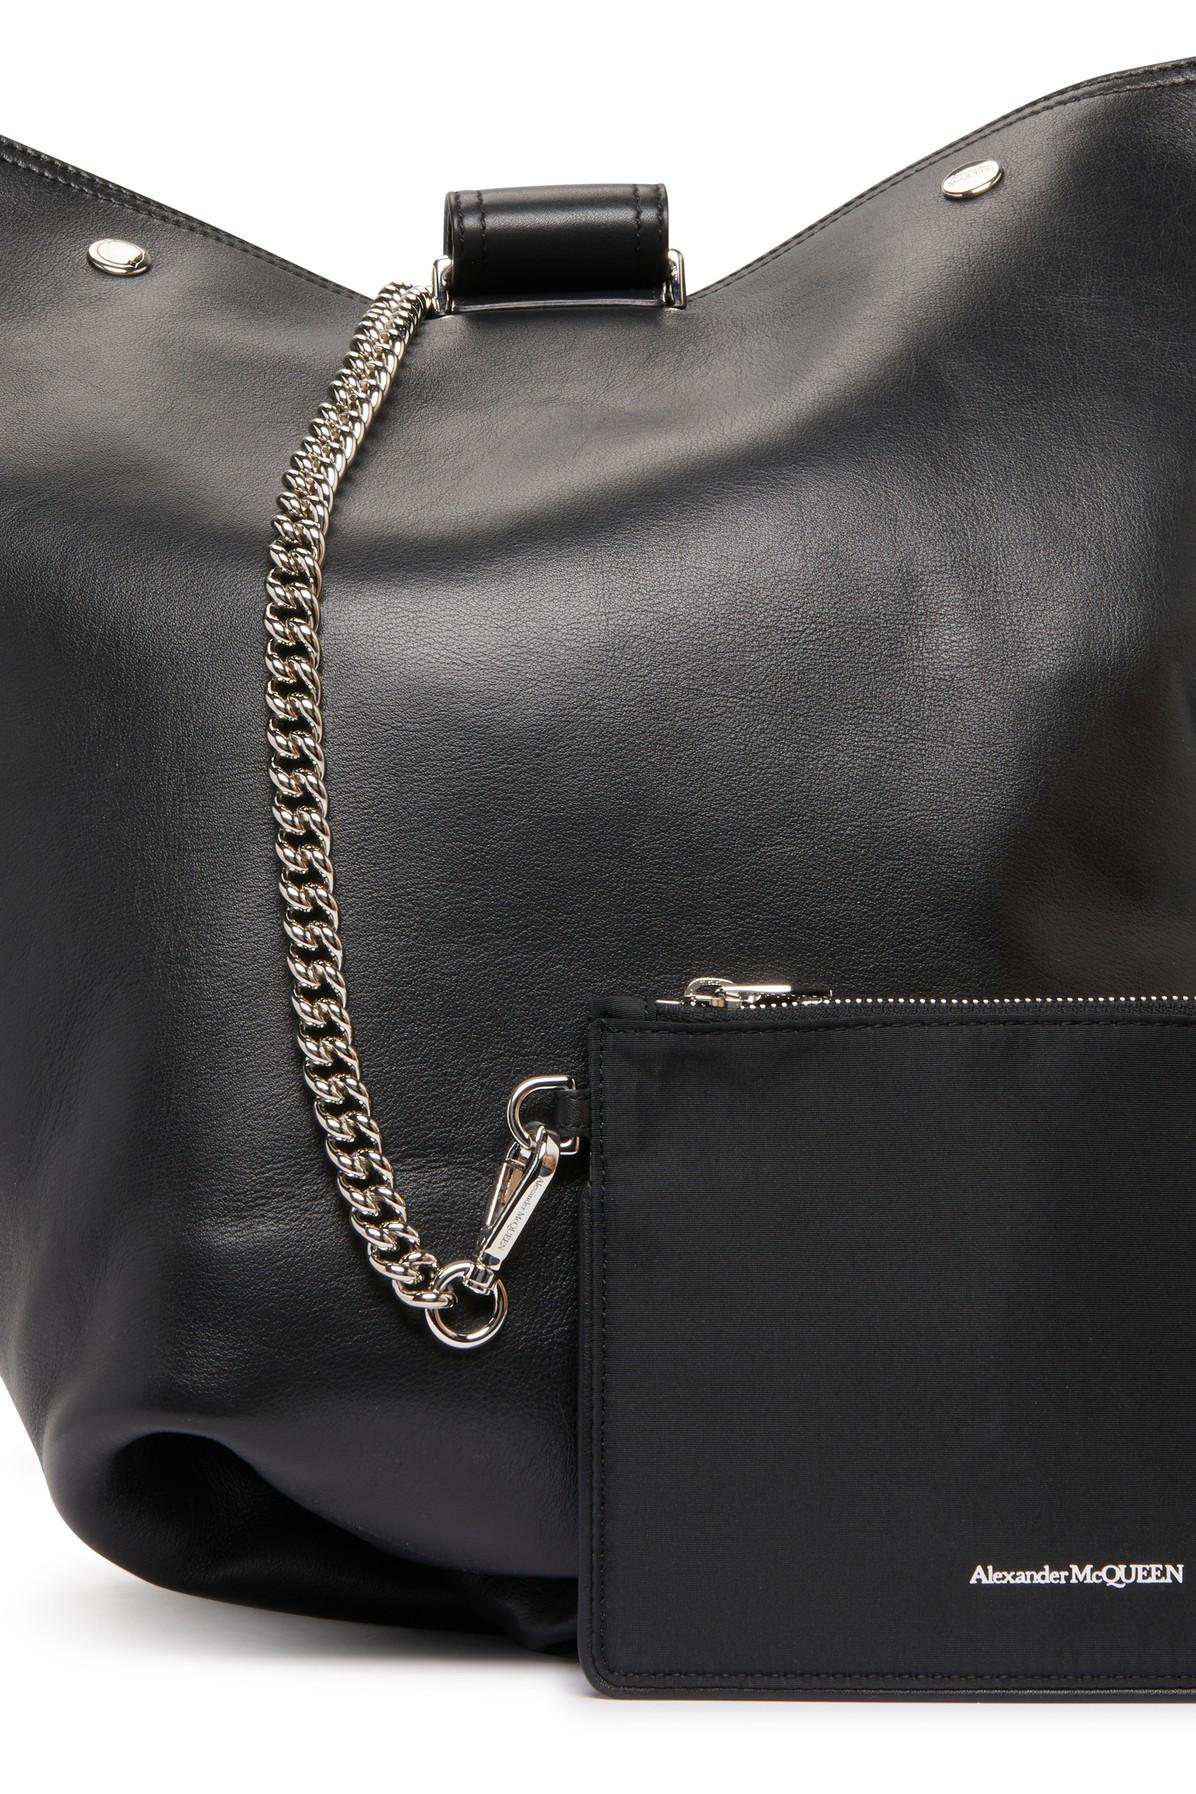 Alexander McQueen The Biker Bag in Black for Men | Lyst